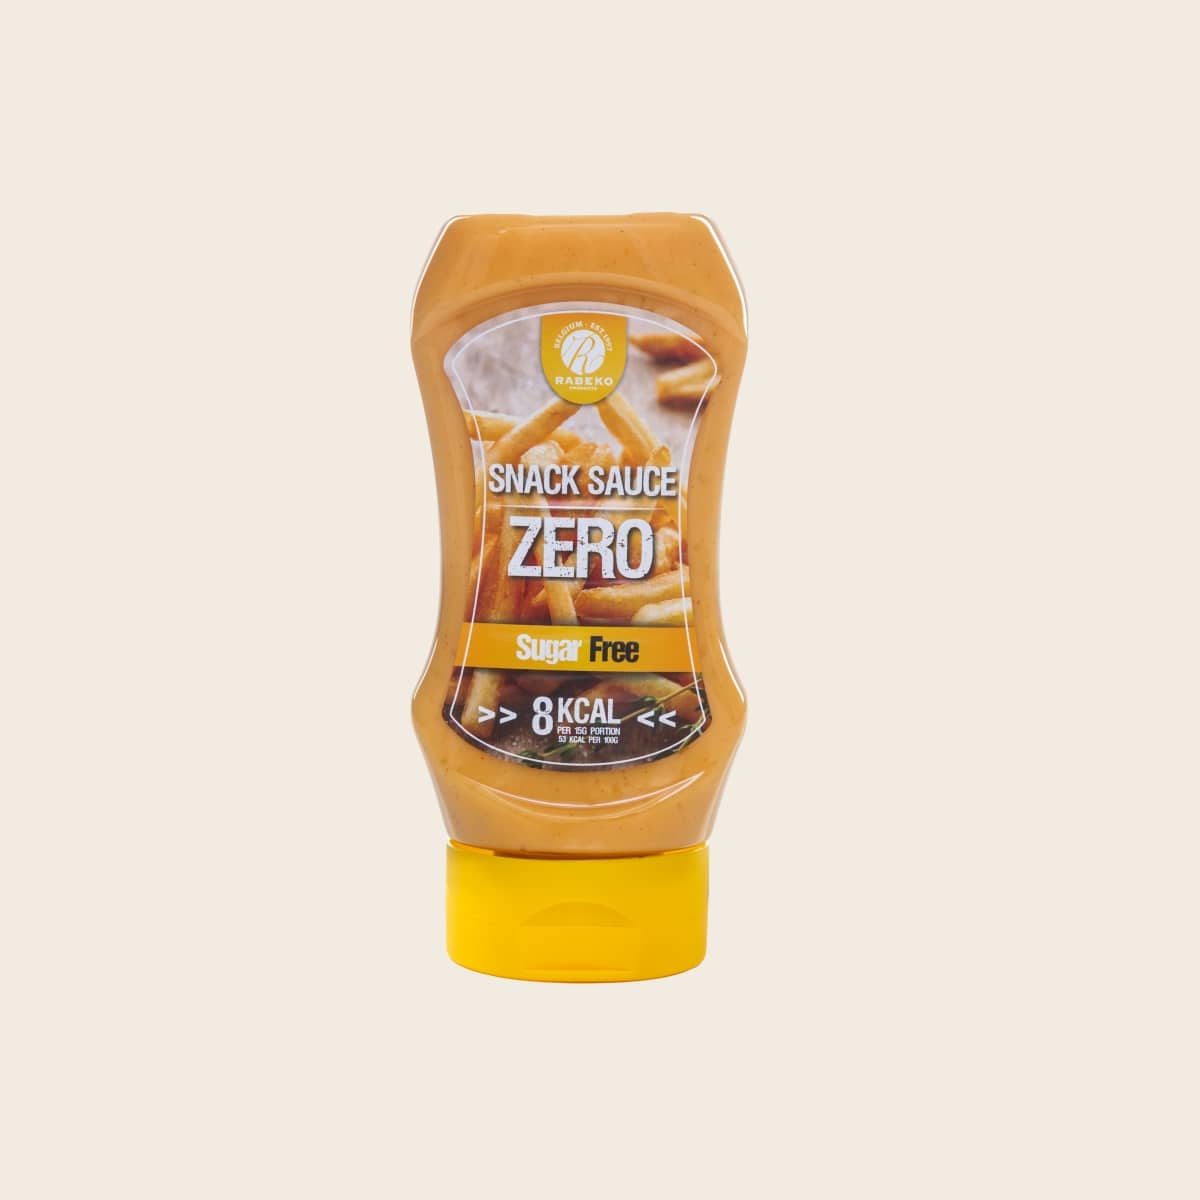 Rabeko Snack - Zero Calorie Sauce - 350ml - Weer Gezond(igd)